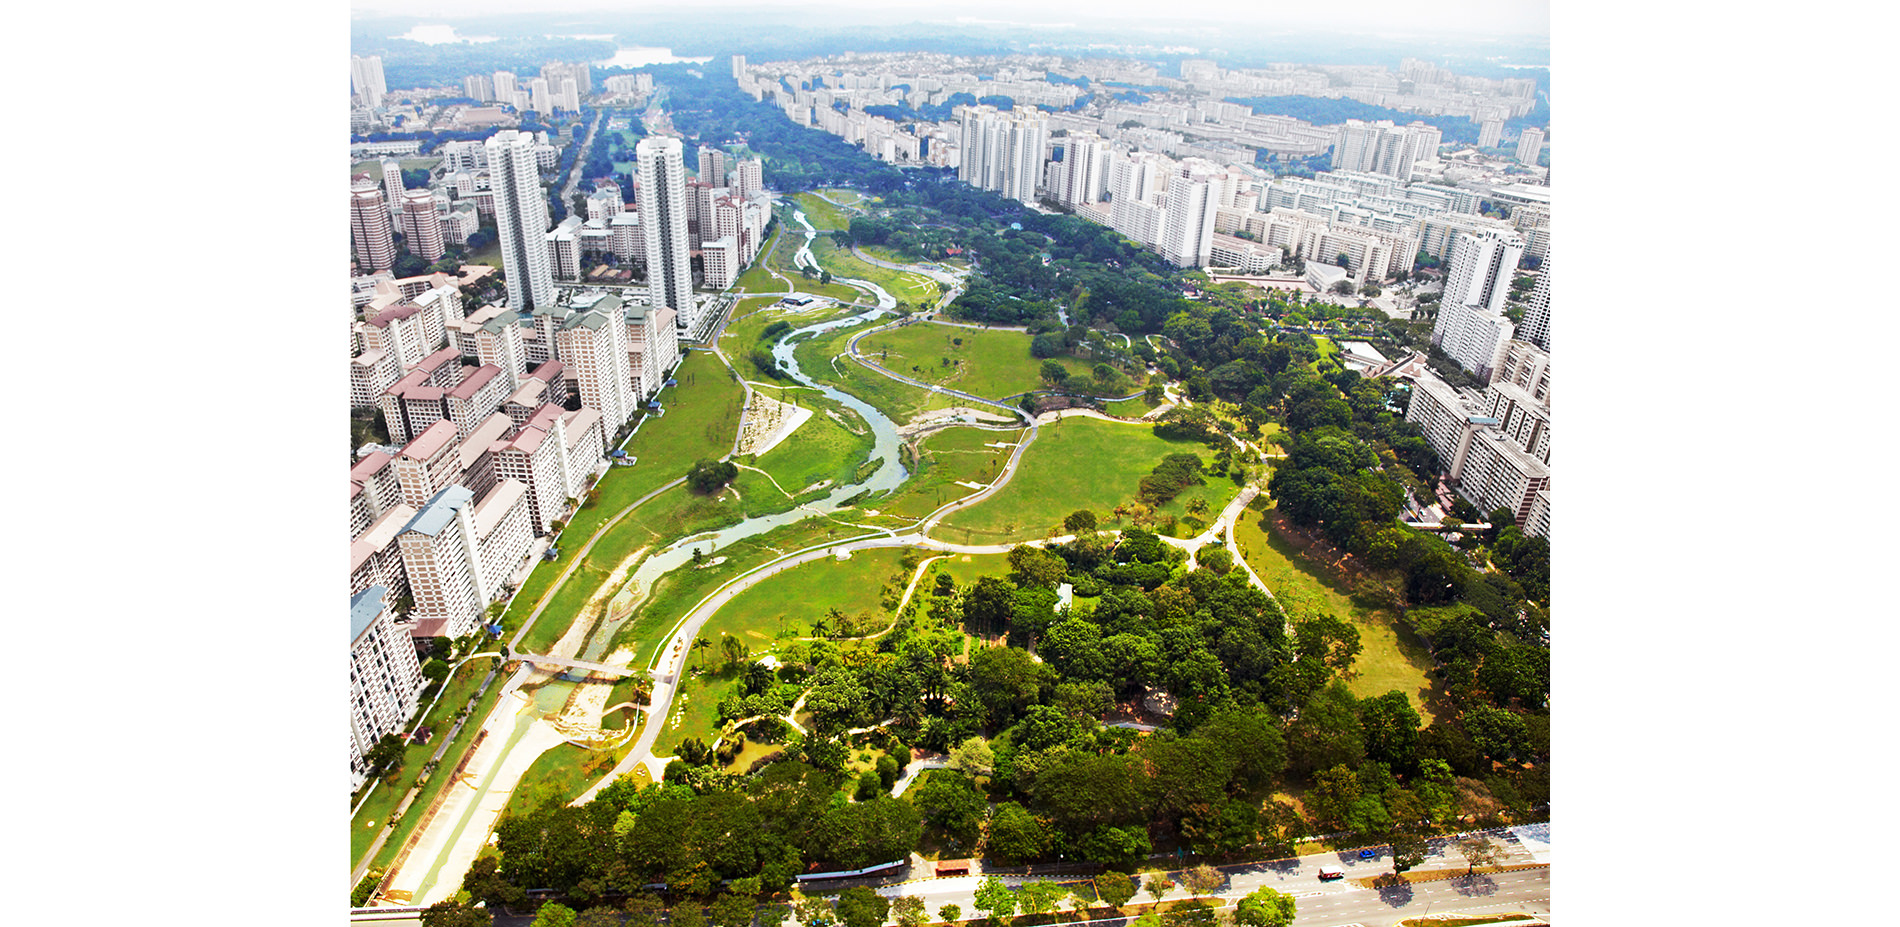 Aerial View of Bishan-Ang Mo Kio Park